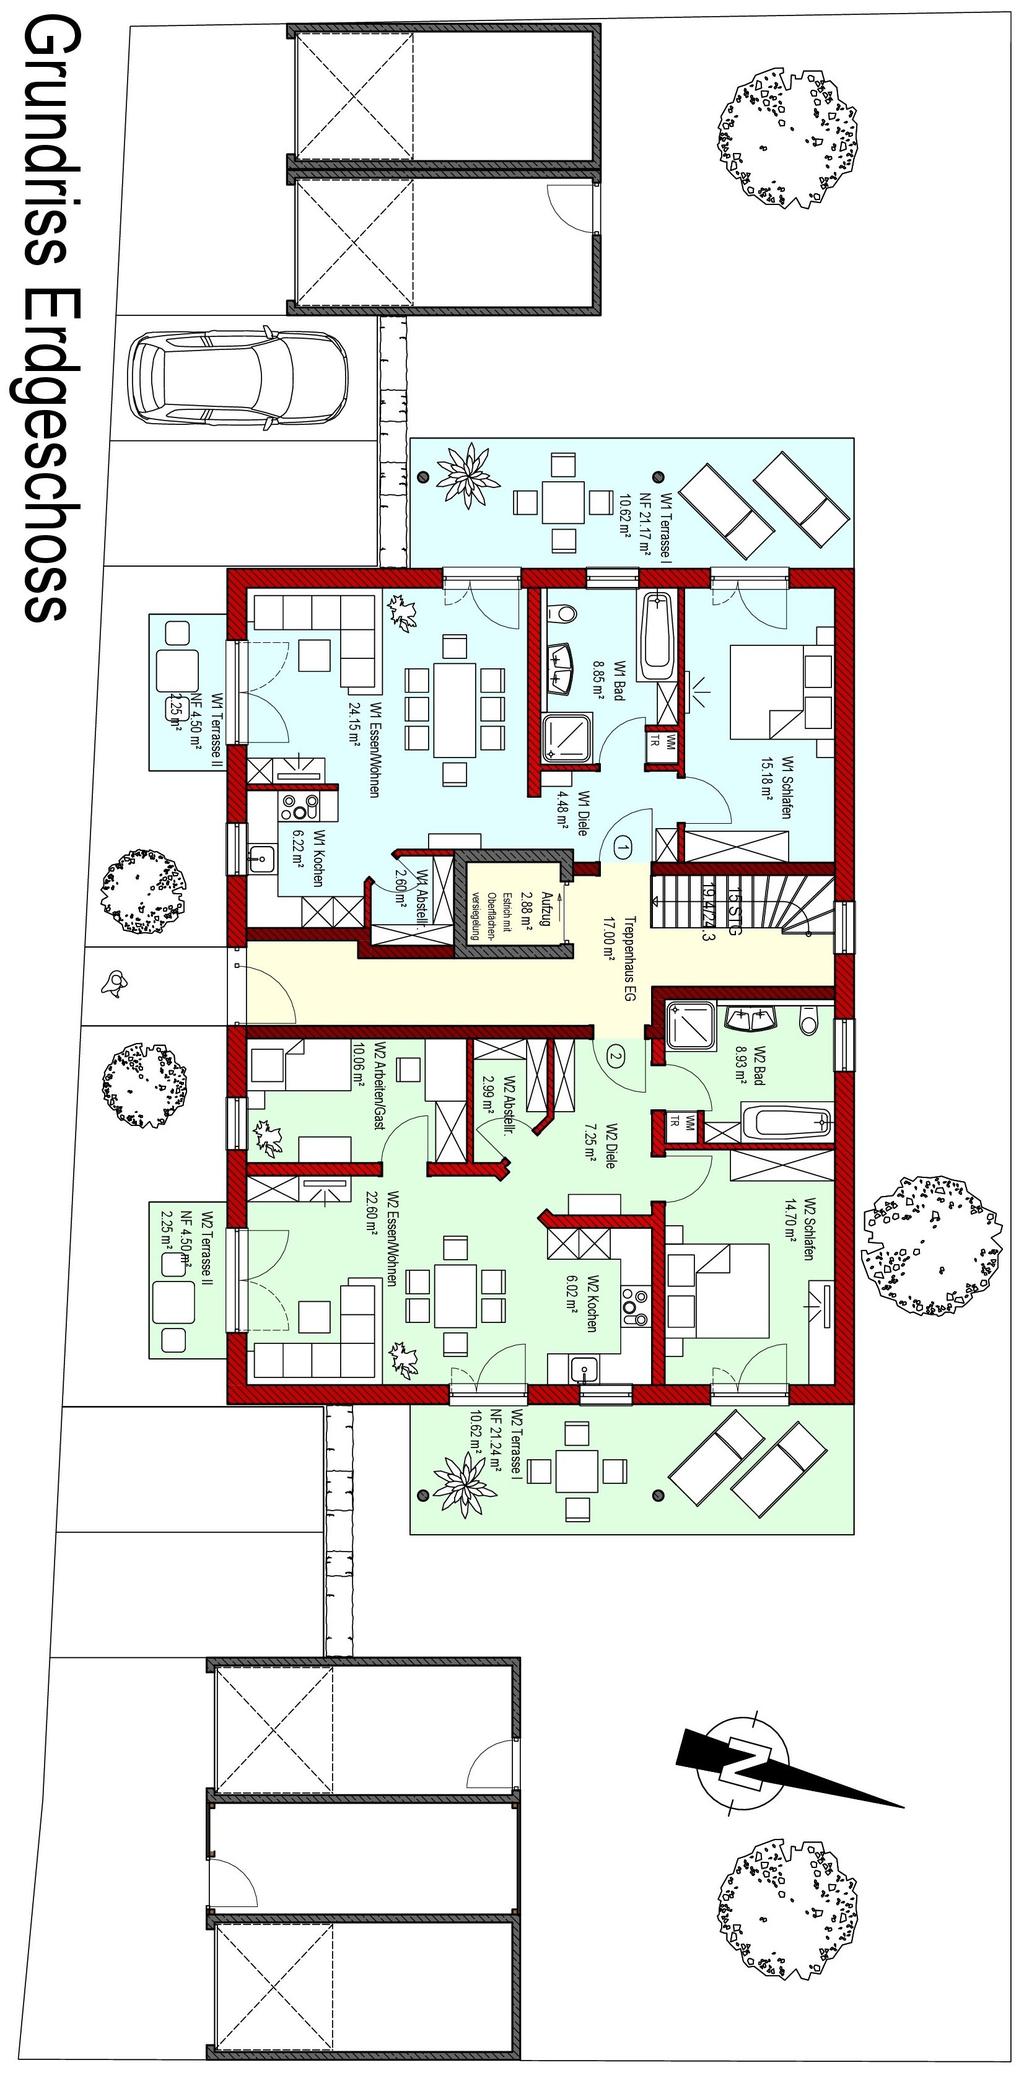 Wohnung 1 229.900 ca. 74,33 m² Wohnfläche incl. ca. 120 m² an die Wohnung angrenzender Gartenanteil als Sondernutzungsrecht Garage Stellplatz 15.000 4.000 Wohnung 2 263.